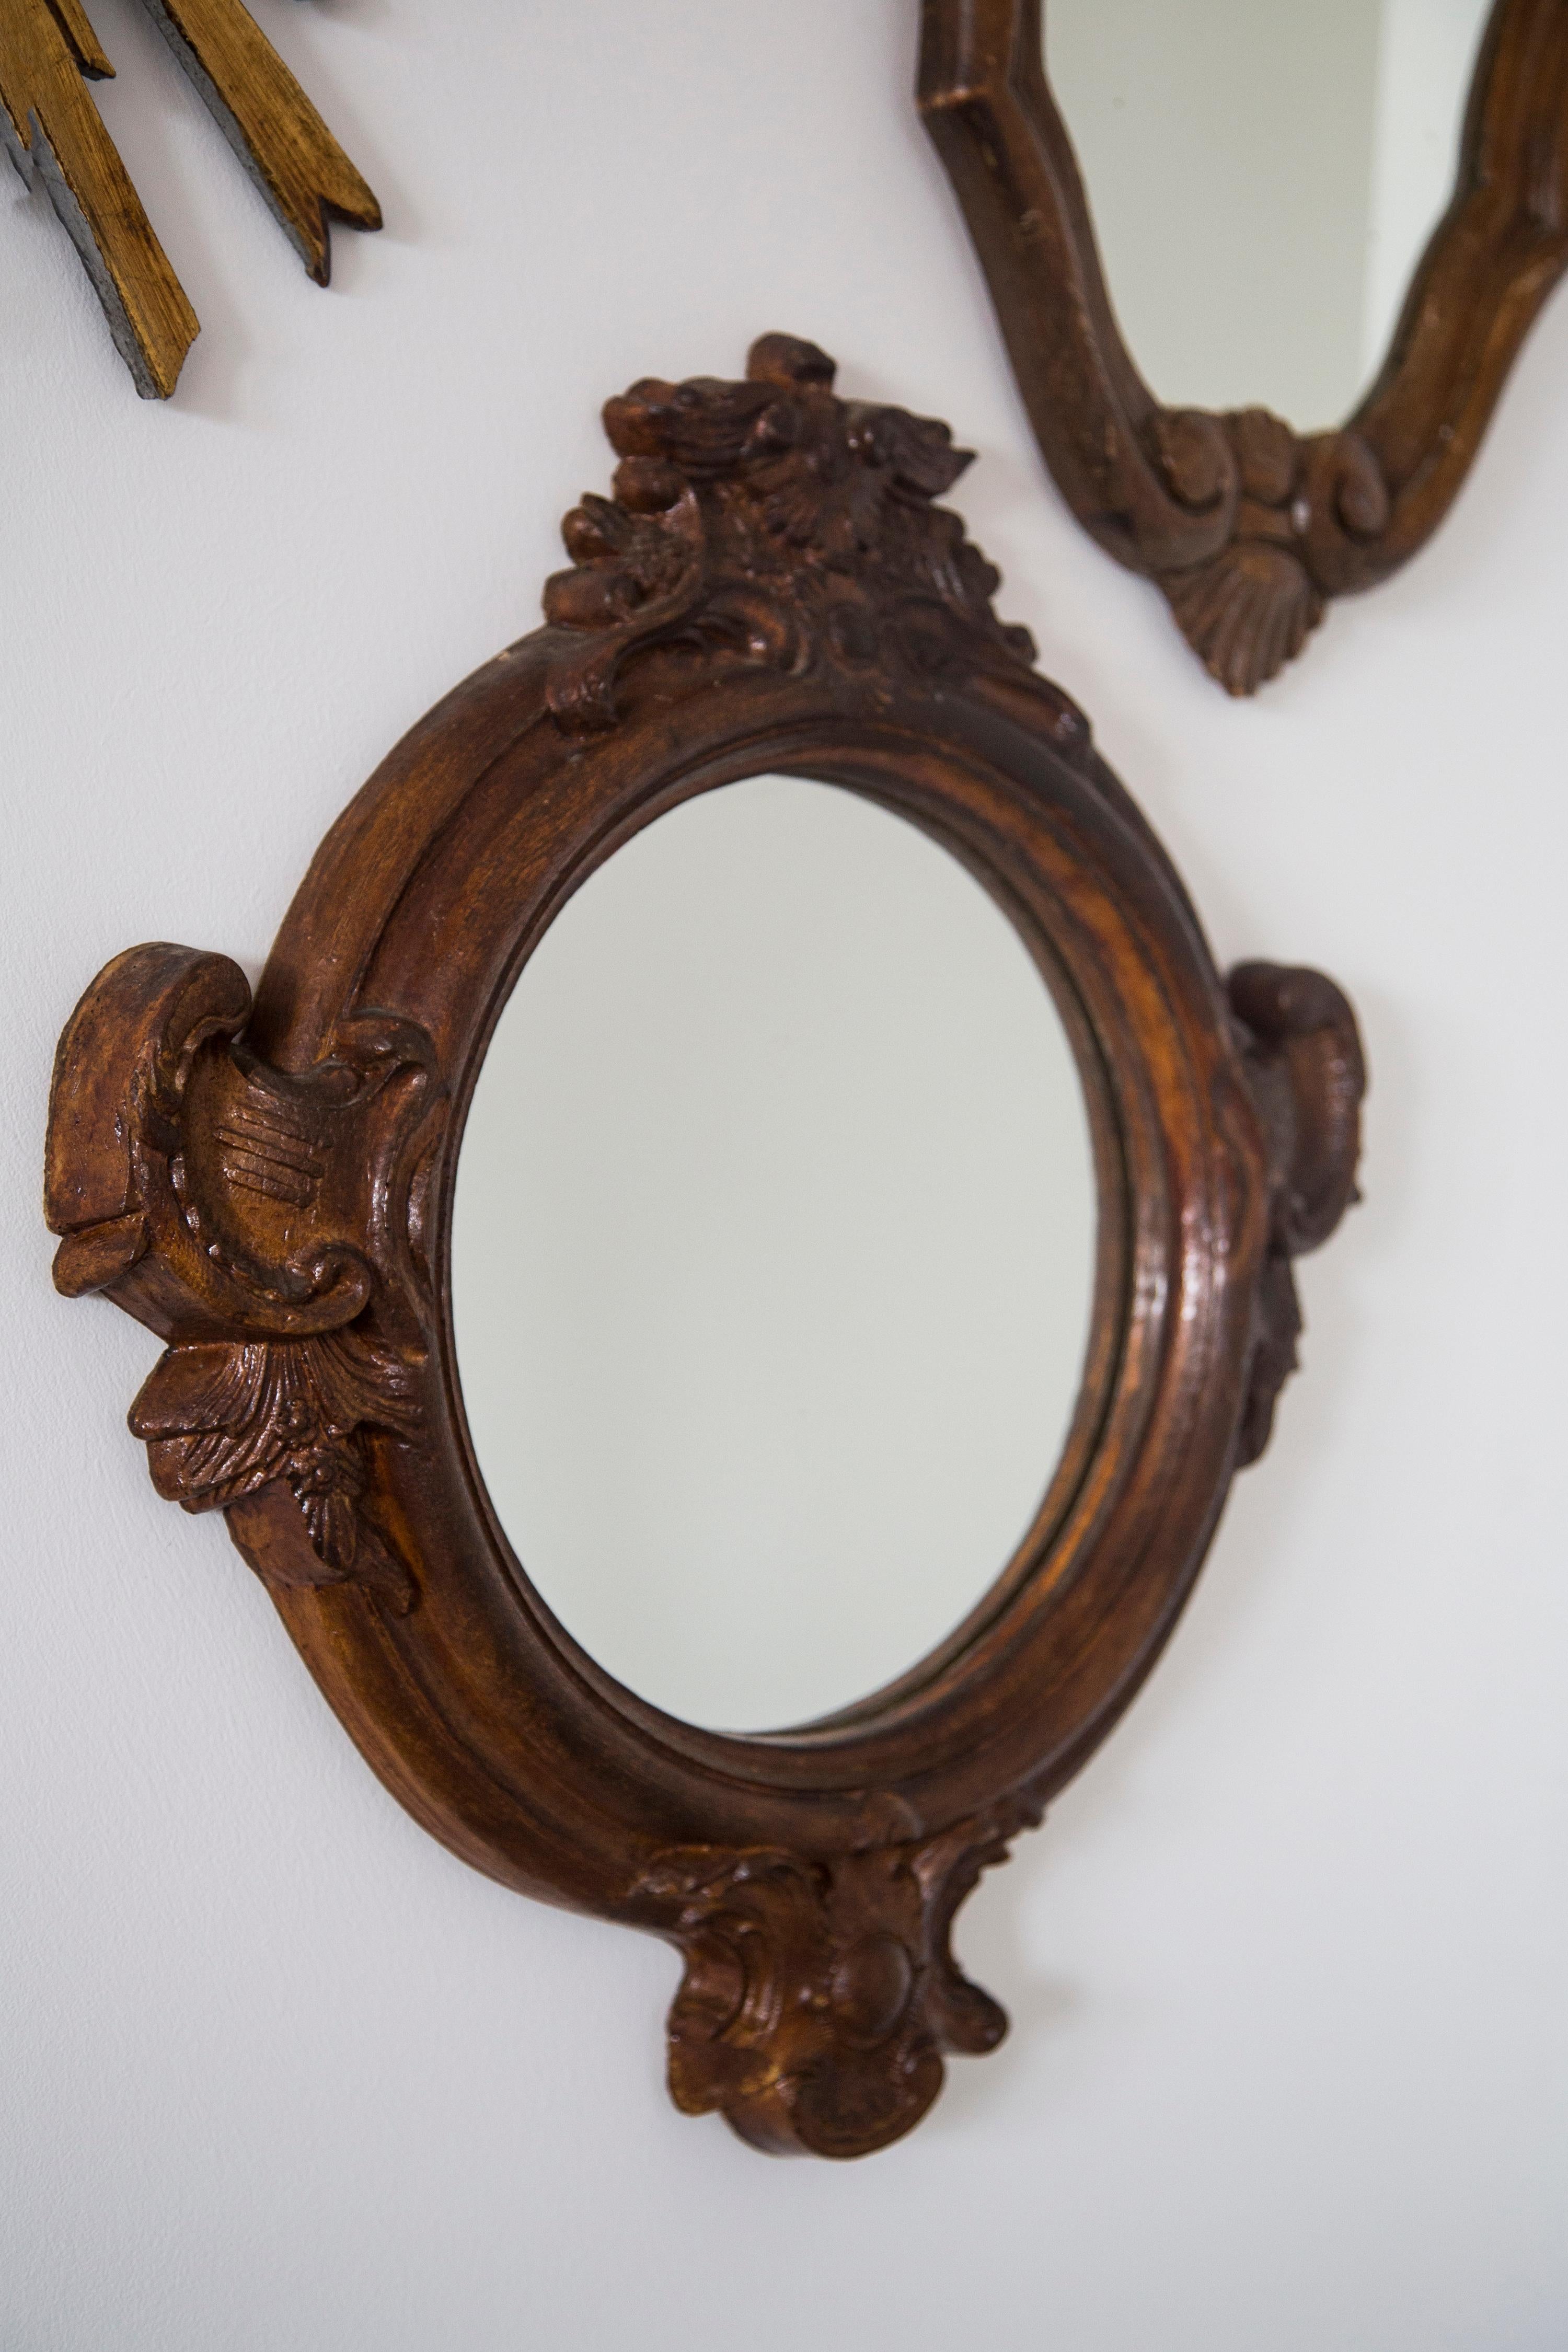 Schöner Spiegel in einem braunen dekorativen Rahmen aus Europa. Der Rahmen ist aus Polywood gefertigt. Der Spiegel ist in sehr gutem Vintage-Zustand. Original Glas. 
Ein schönes Stück für jedes Interieur! Nur ein einziges Stück.